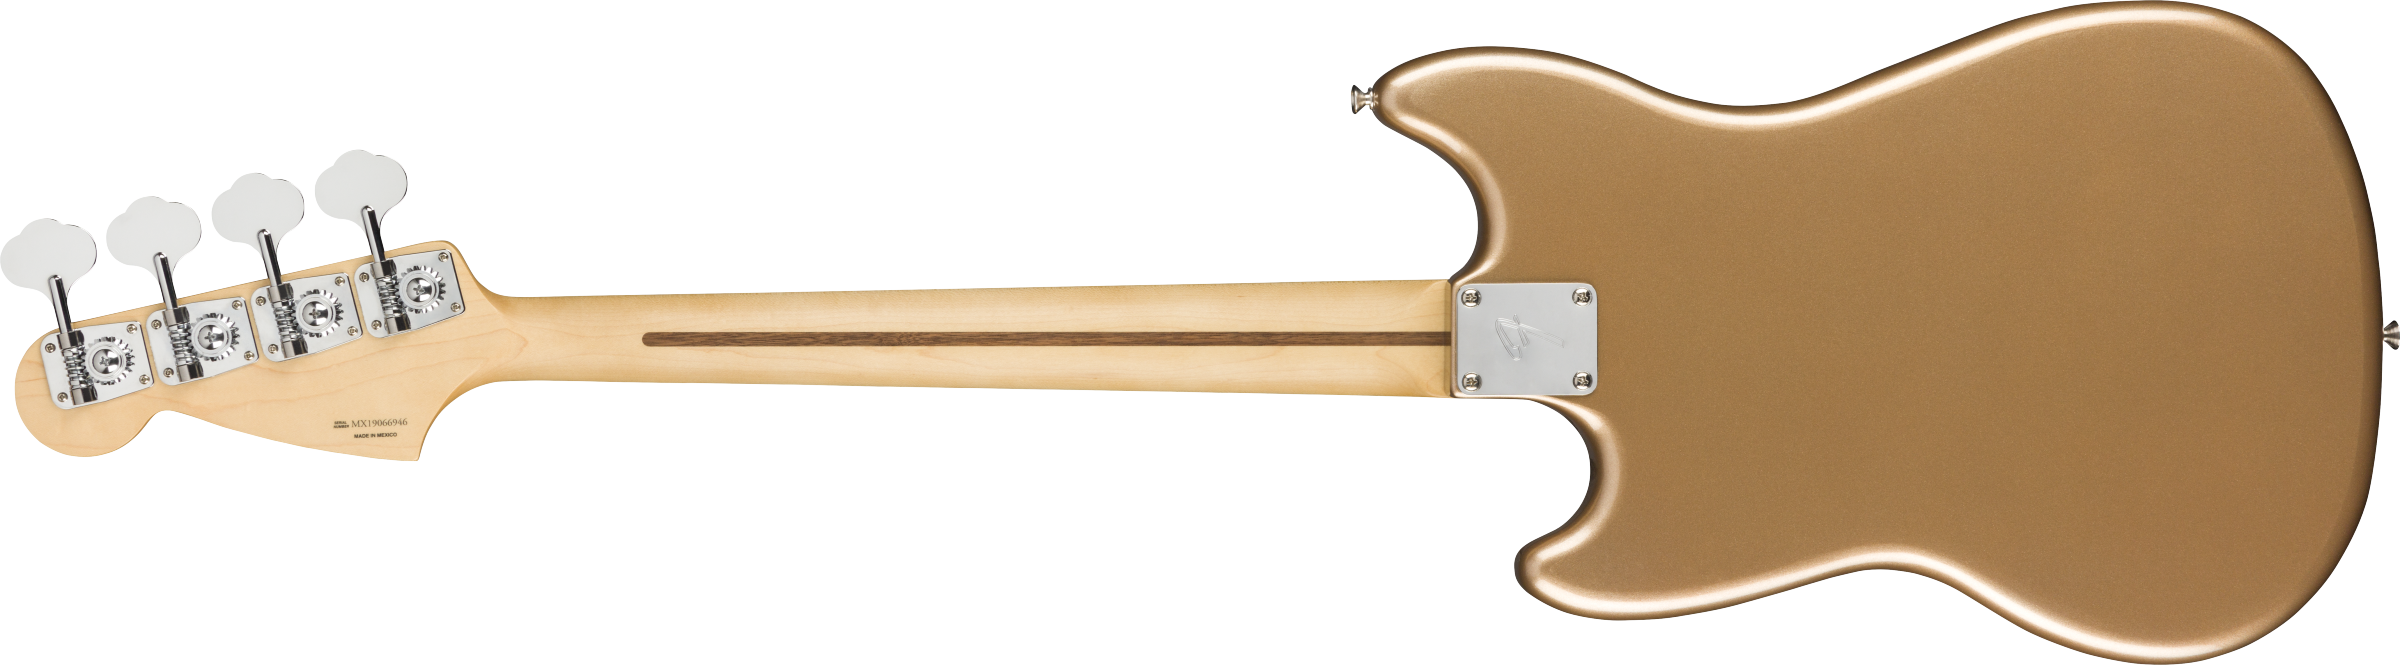 Fender Player Mustang Bass PJ - Firemist Gold F-0144053553